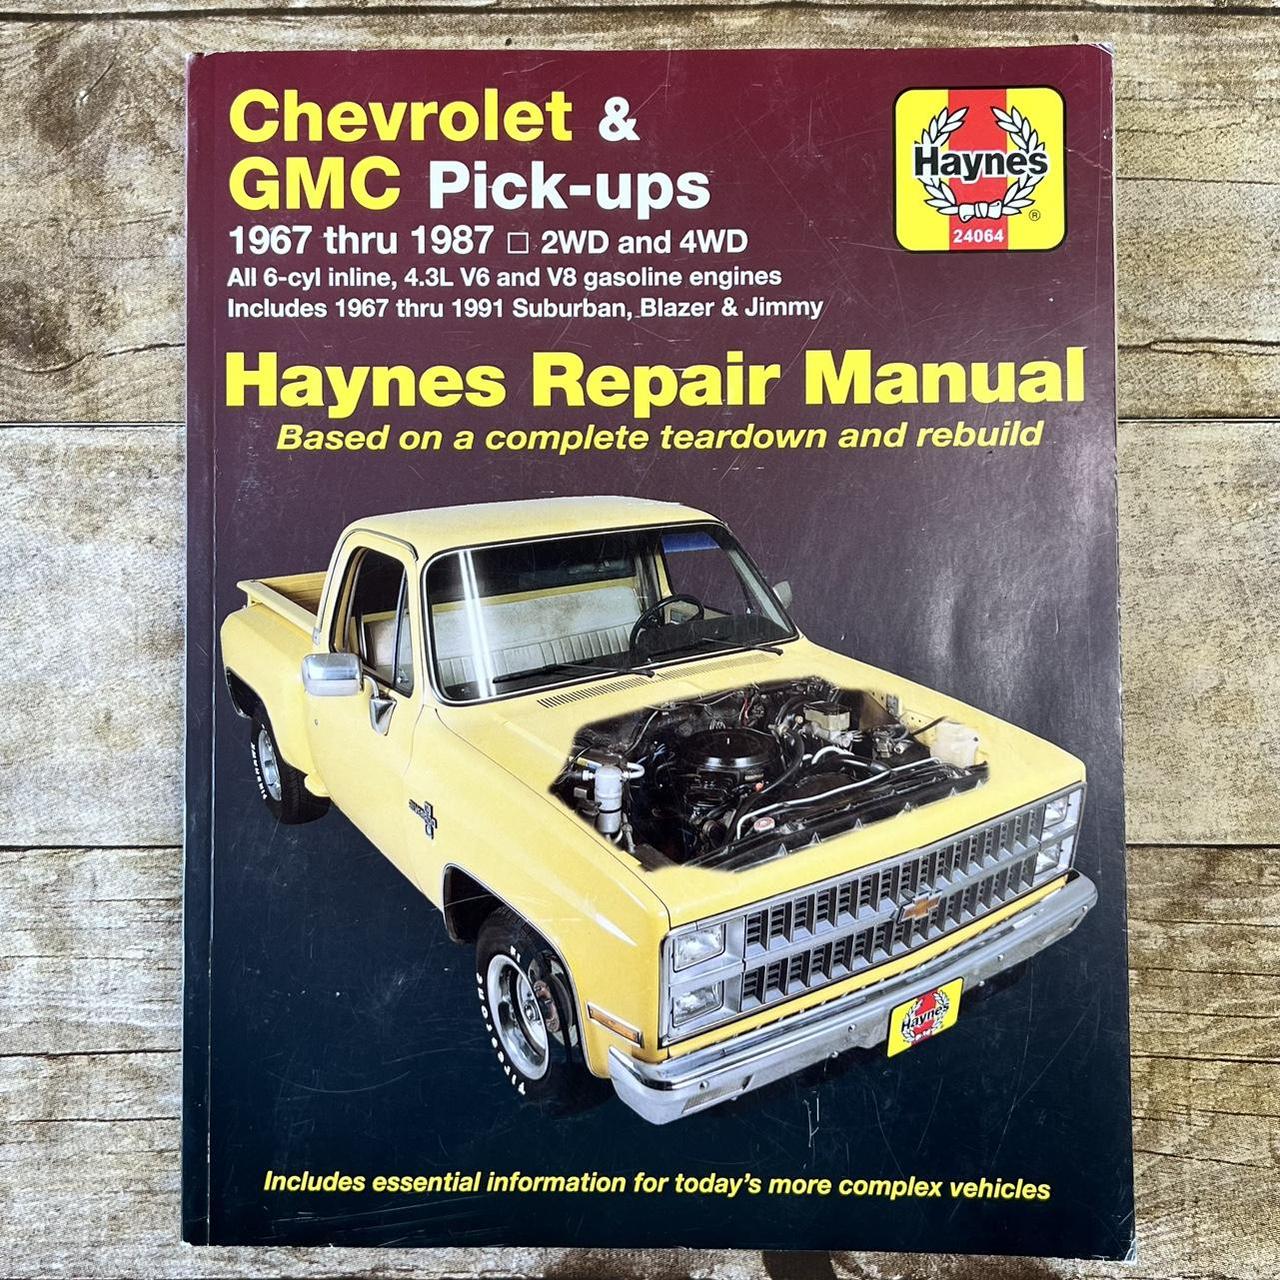 Chevrolet & GMC Paperback Manual Repair, For Pickups